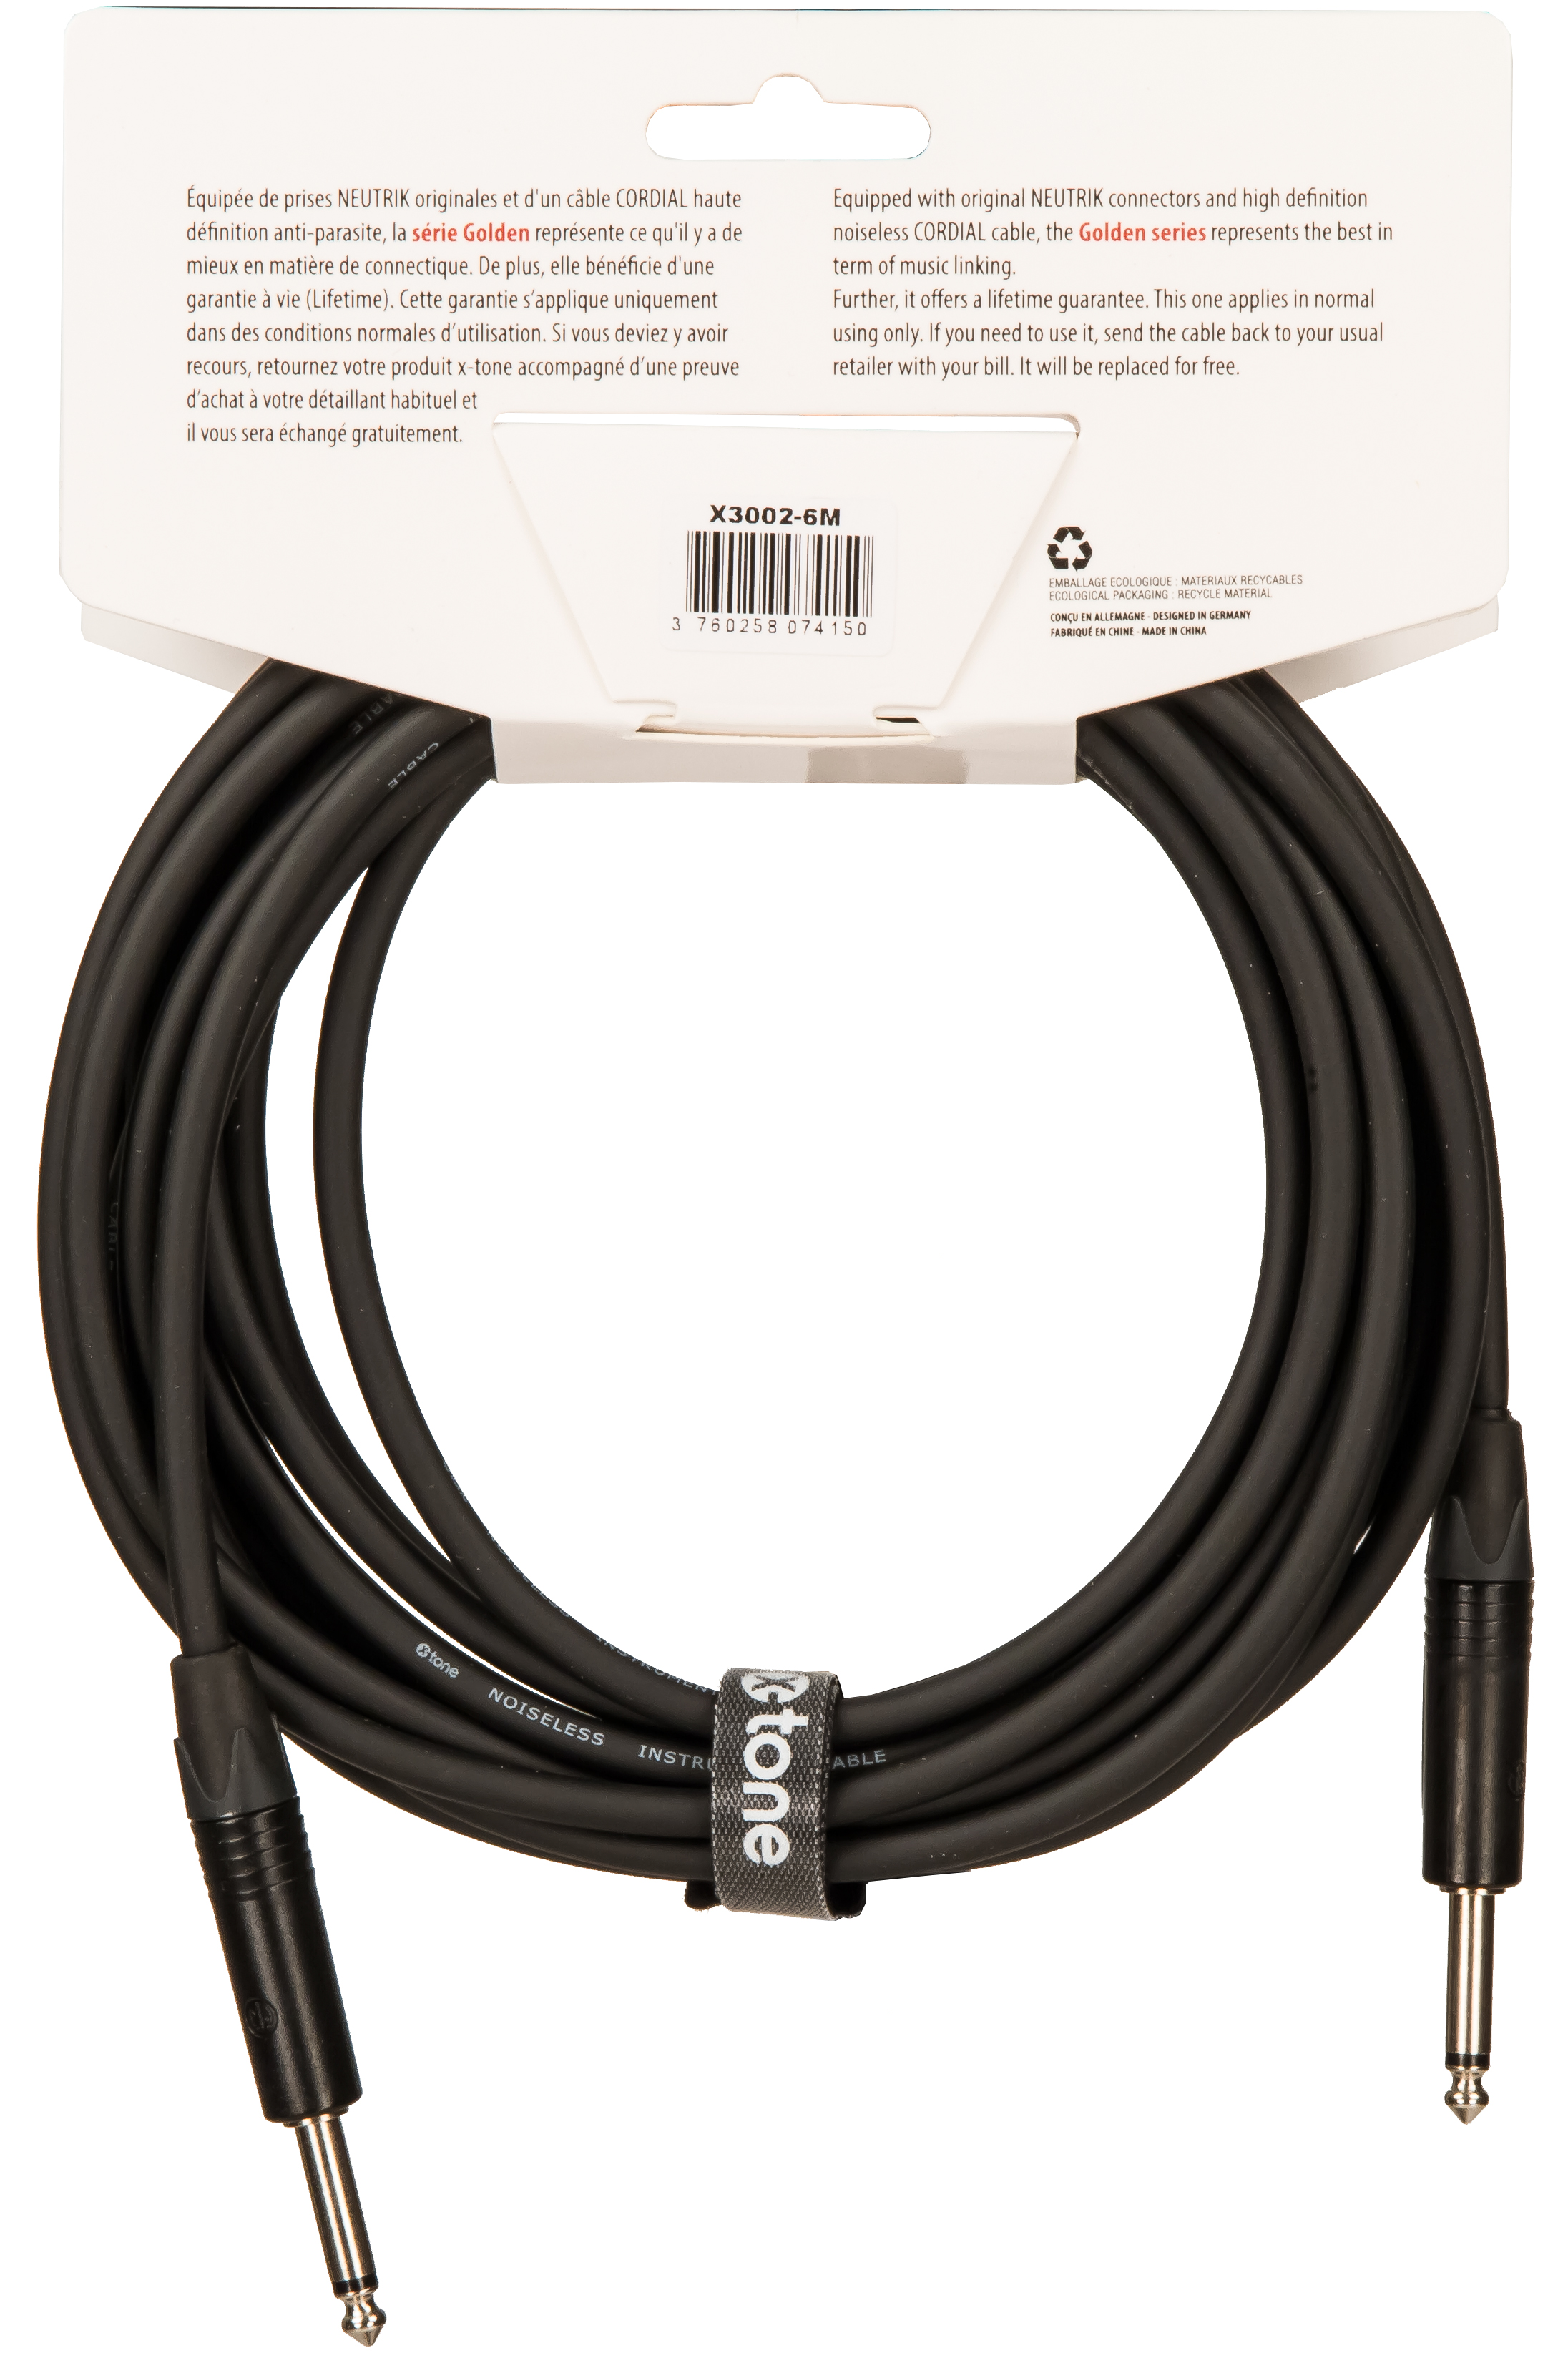 X-tone X3002-6m Instrument Cable Golden Series Neutrik Droit/droit 6m - CÂble - Variation 1